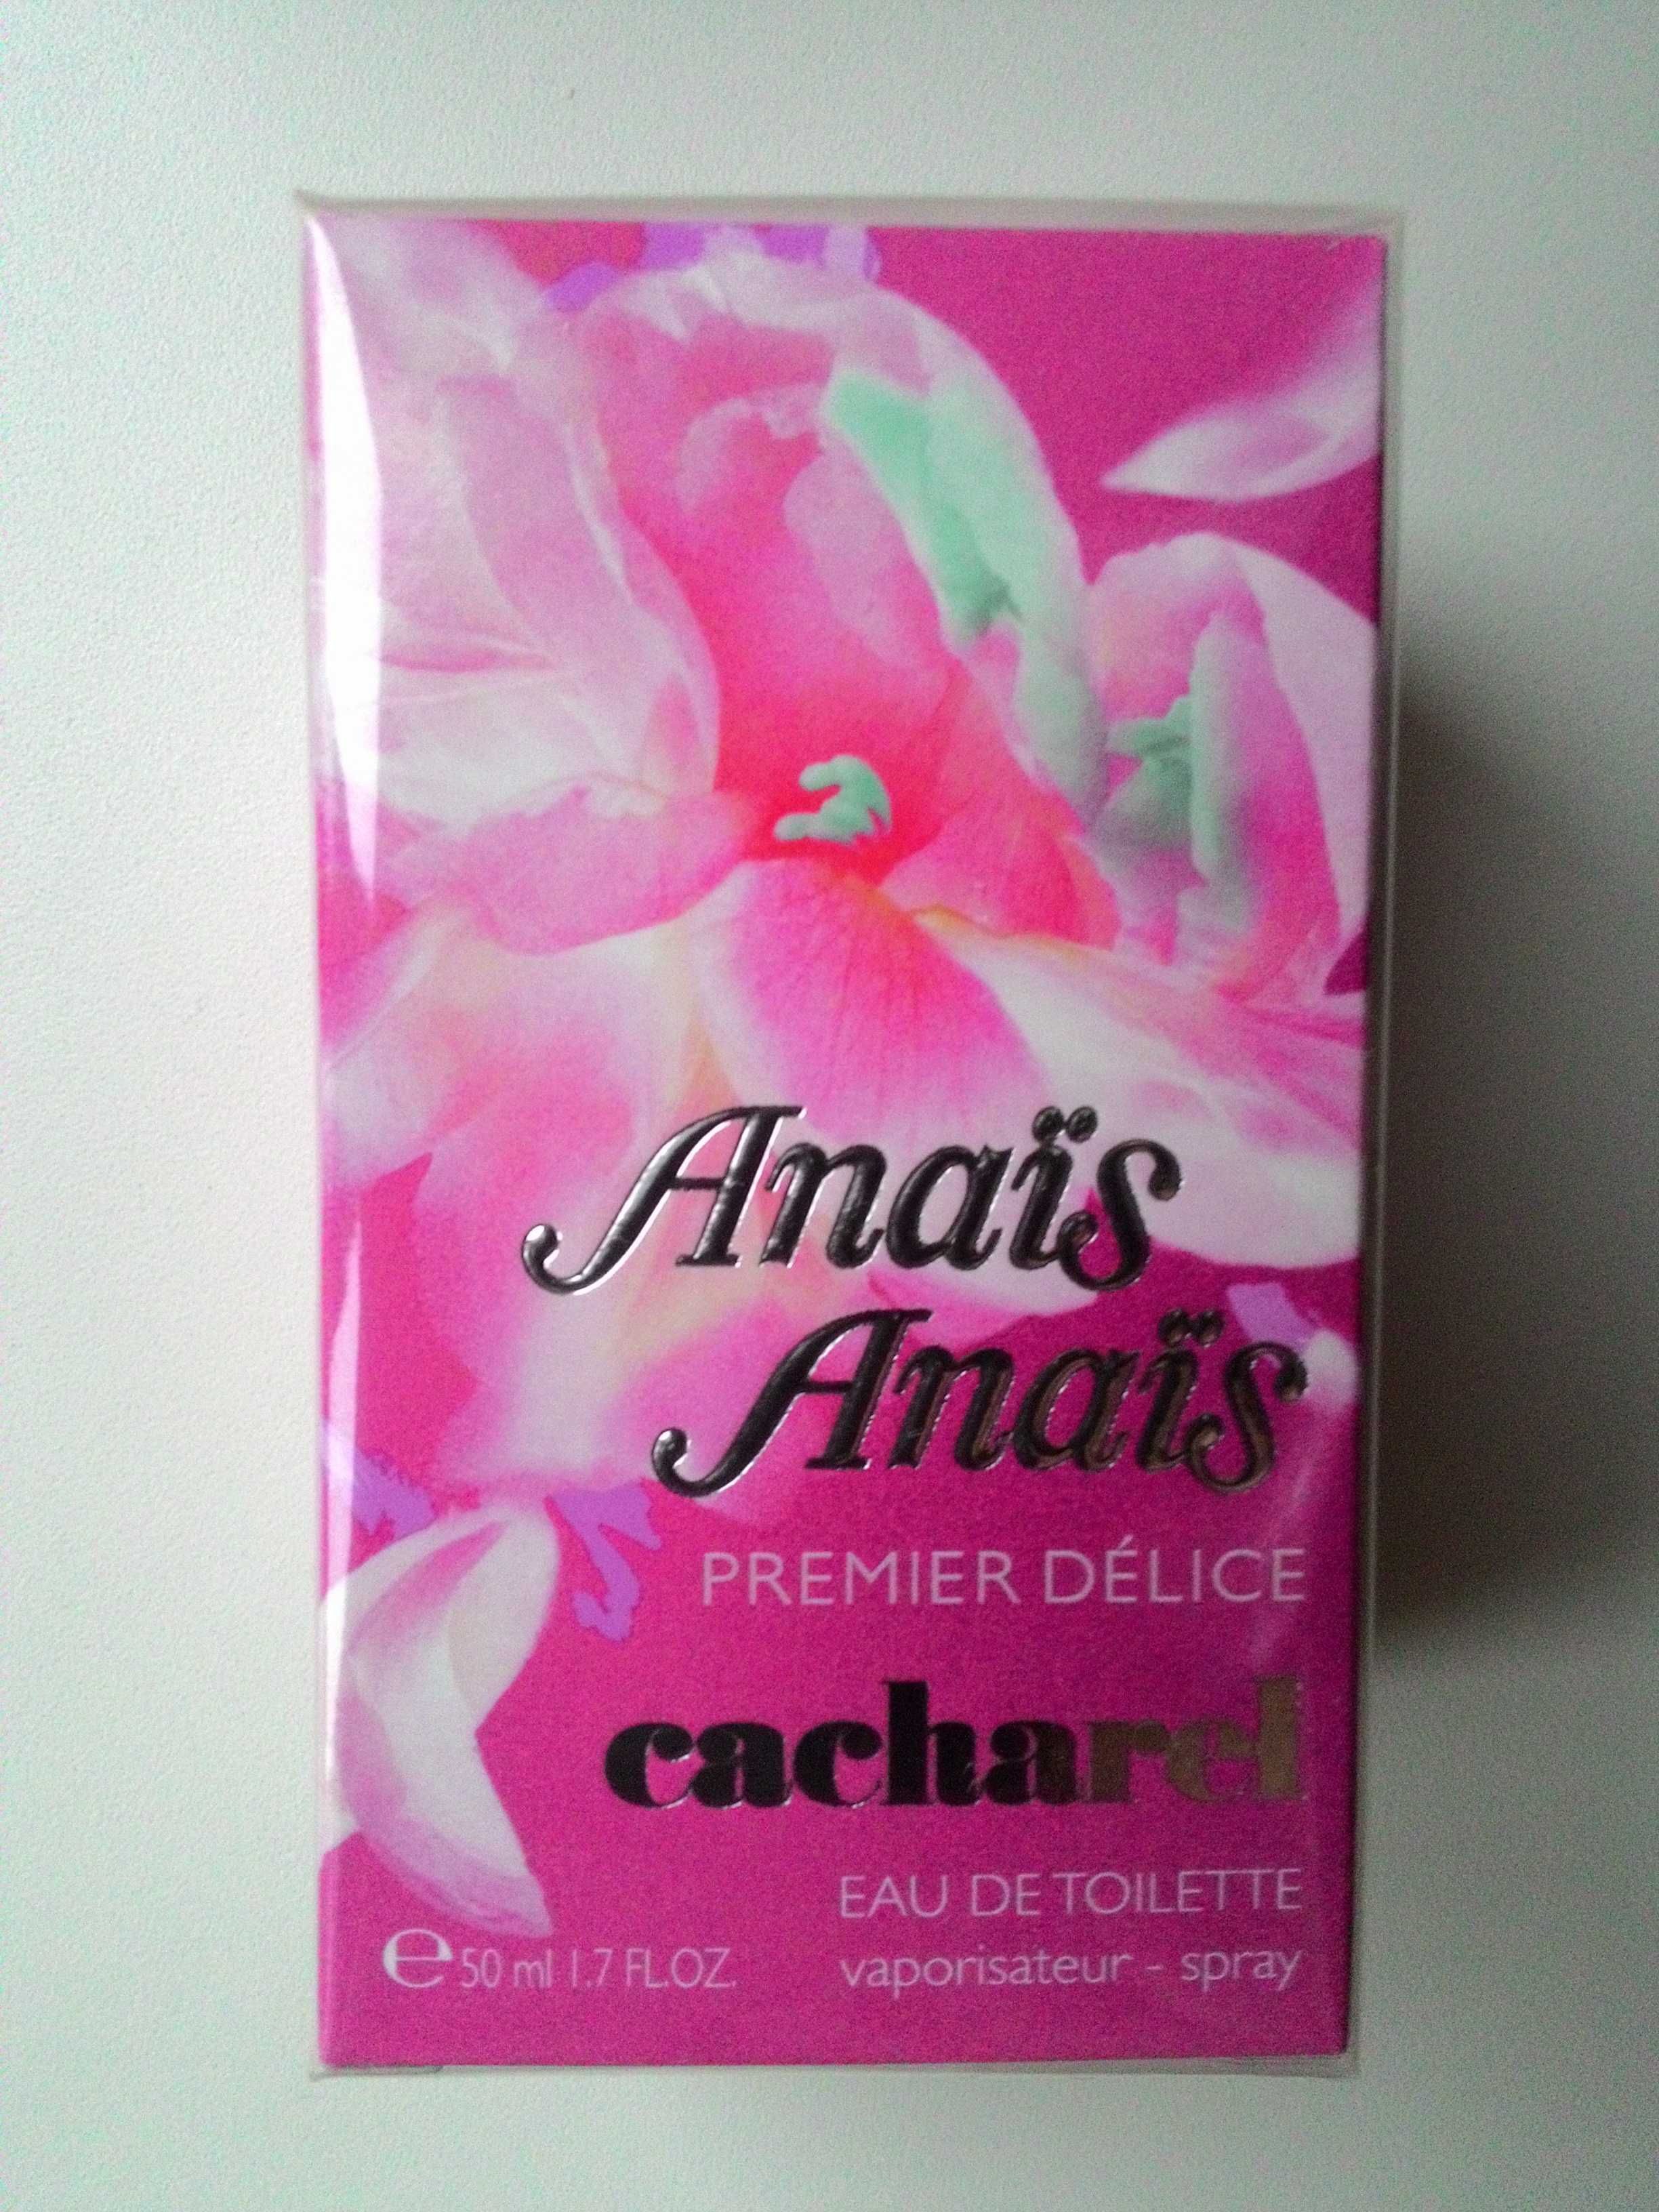 Подарите себе Anais Anais Premier Deliс–парфюм, поднимающий настроение